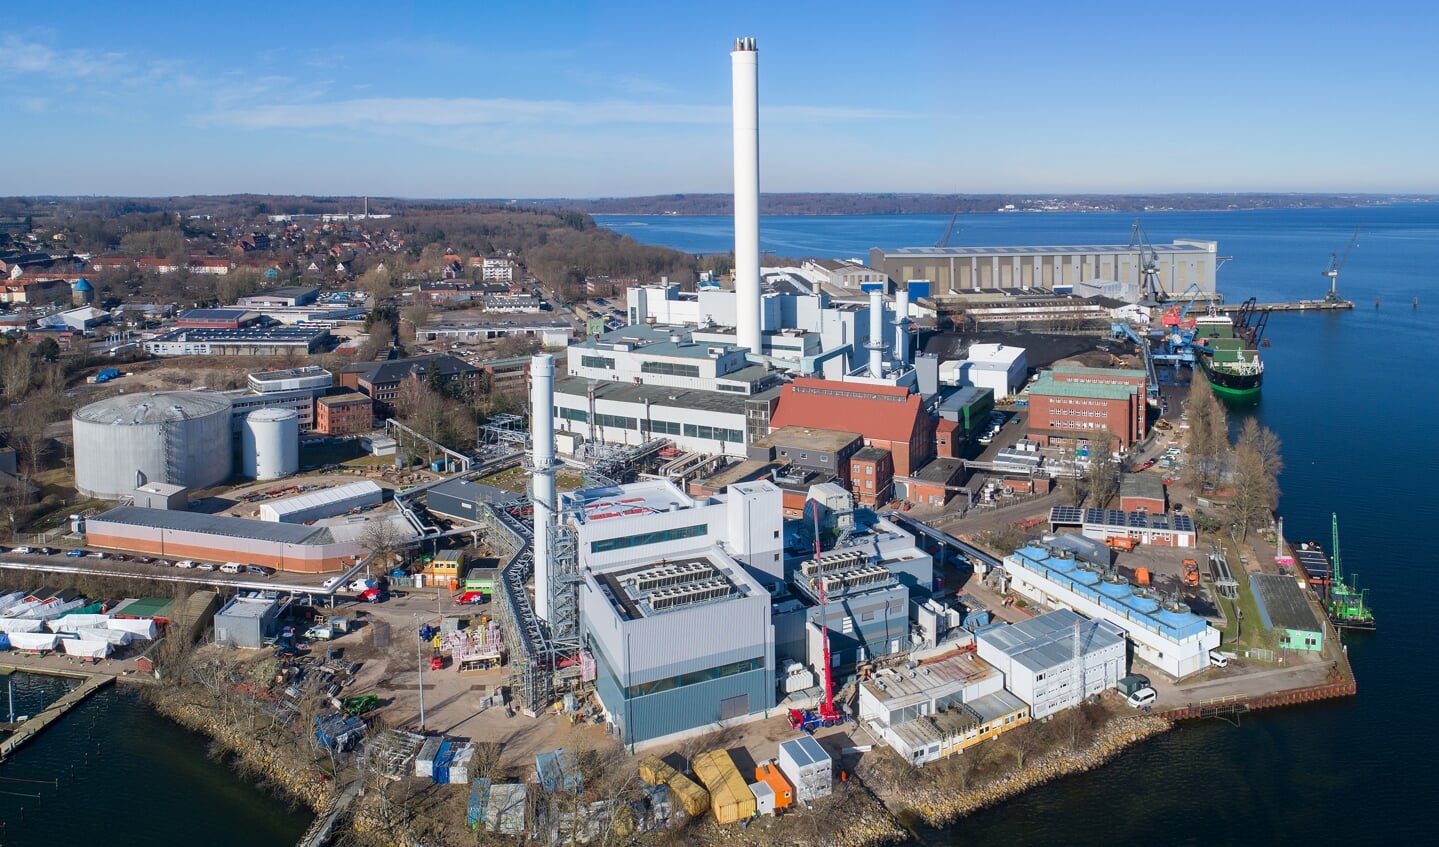 Ordentlich durchpusten: Die Flensburger Stadtwerke nehmen eine neue Anlage in Betrieb, dadurch kann es zunächst etwas lauter werden. Foto: